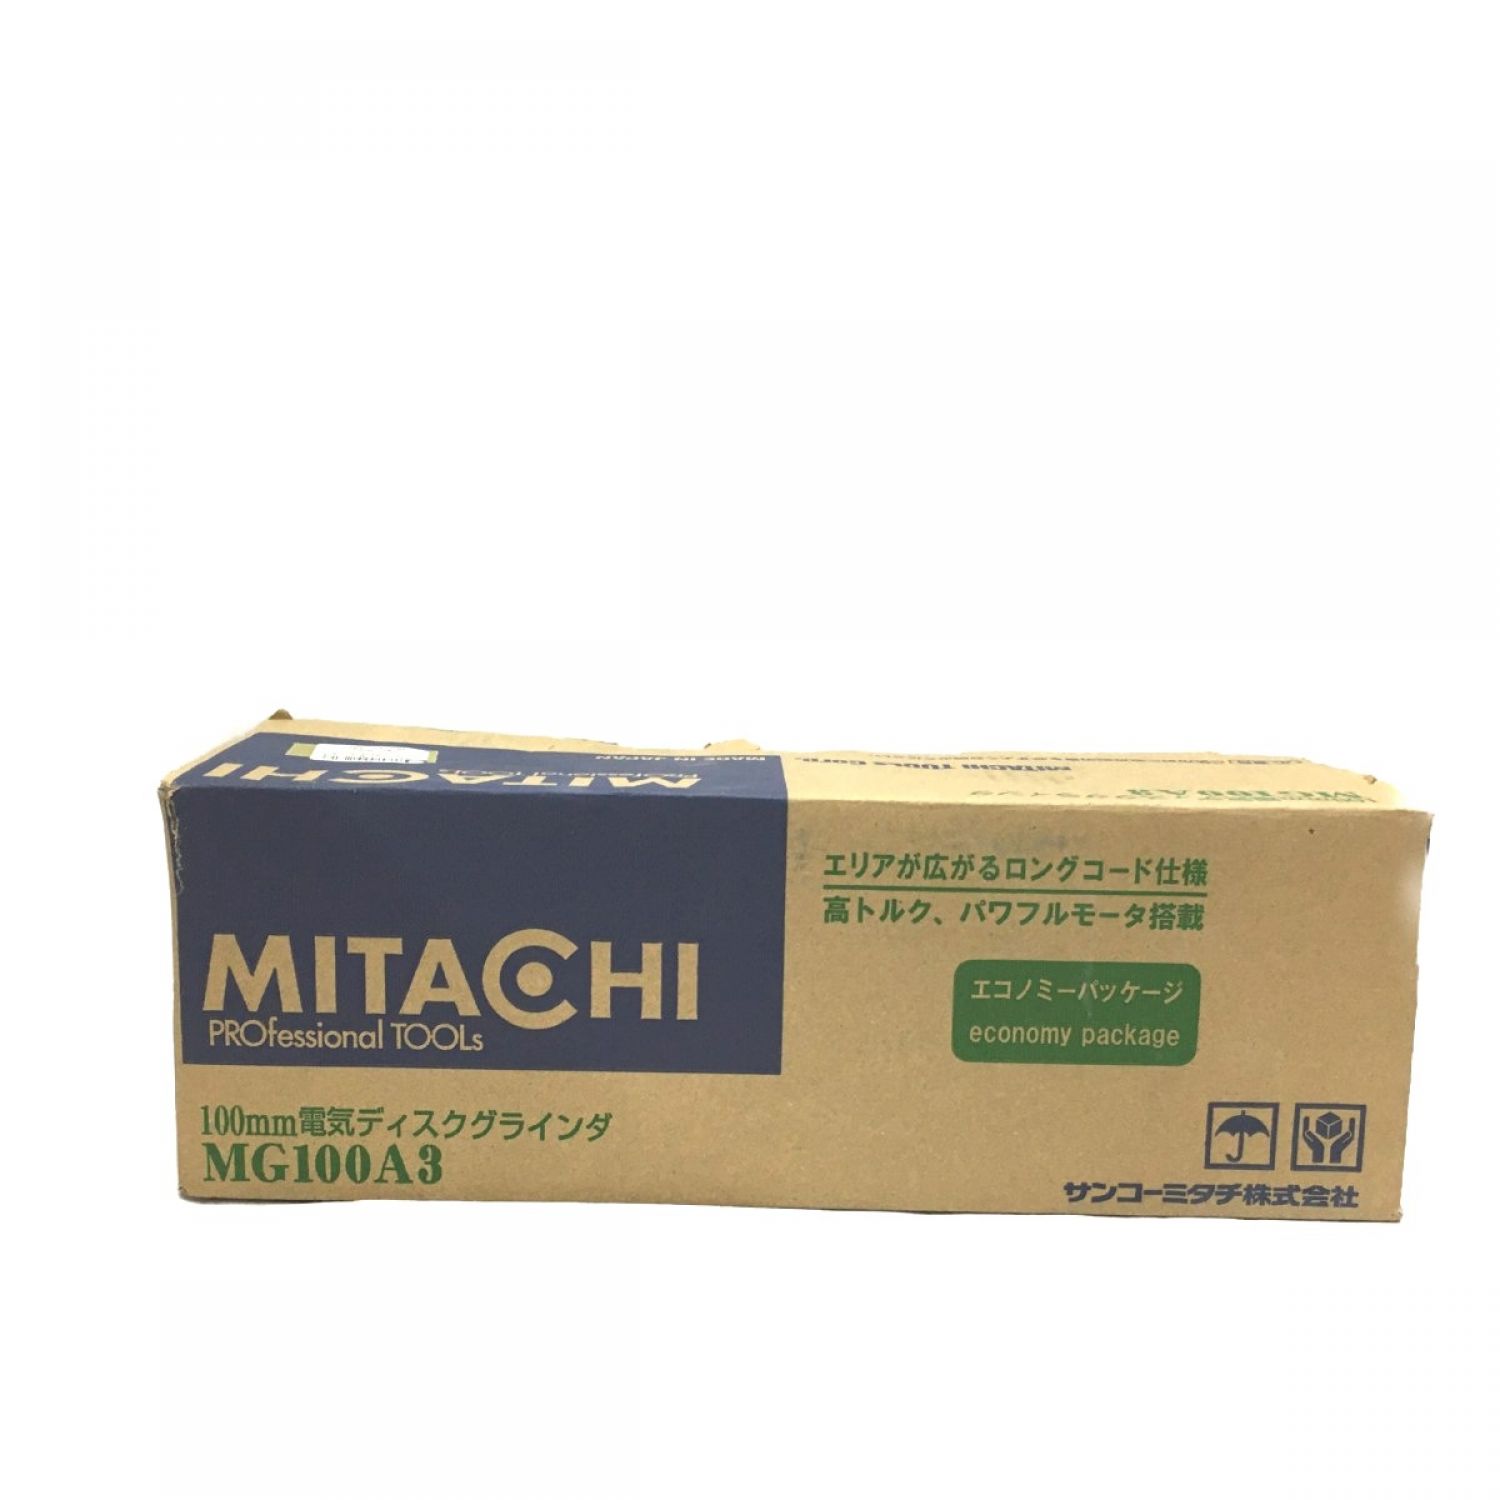 ディスクグラインダー 100mm電気 サンコーミタチ (MITACHI) MG 100A3-